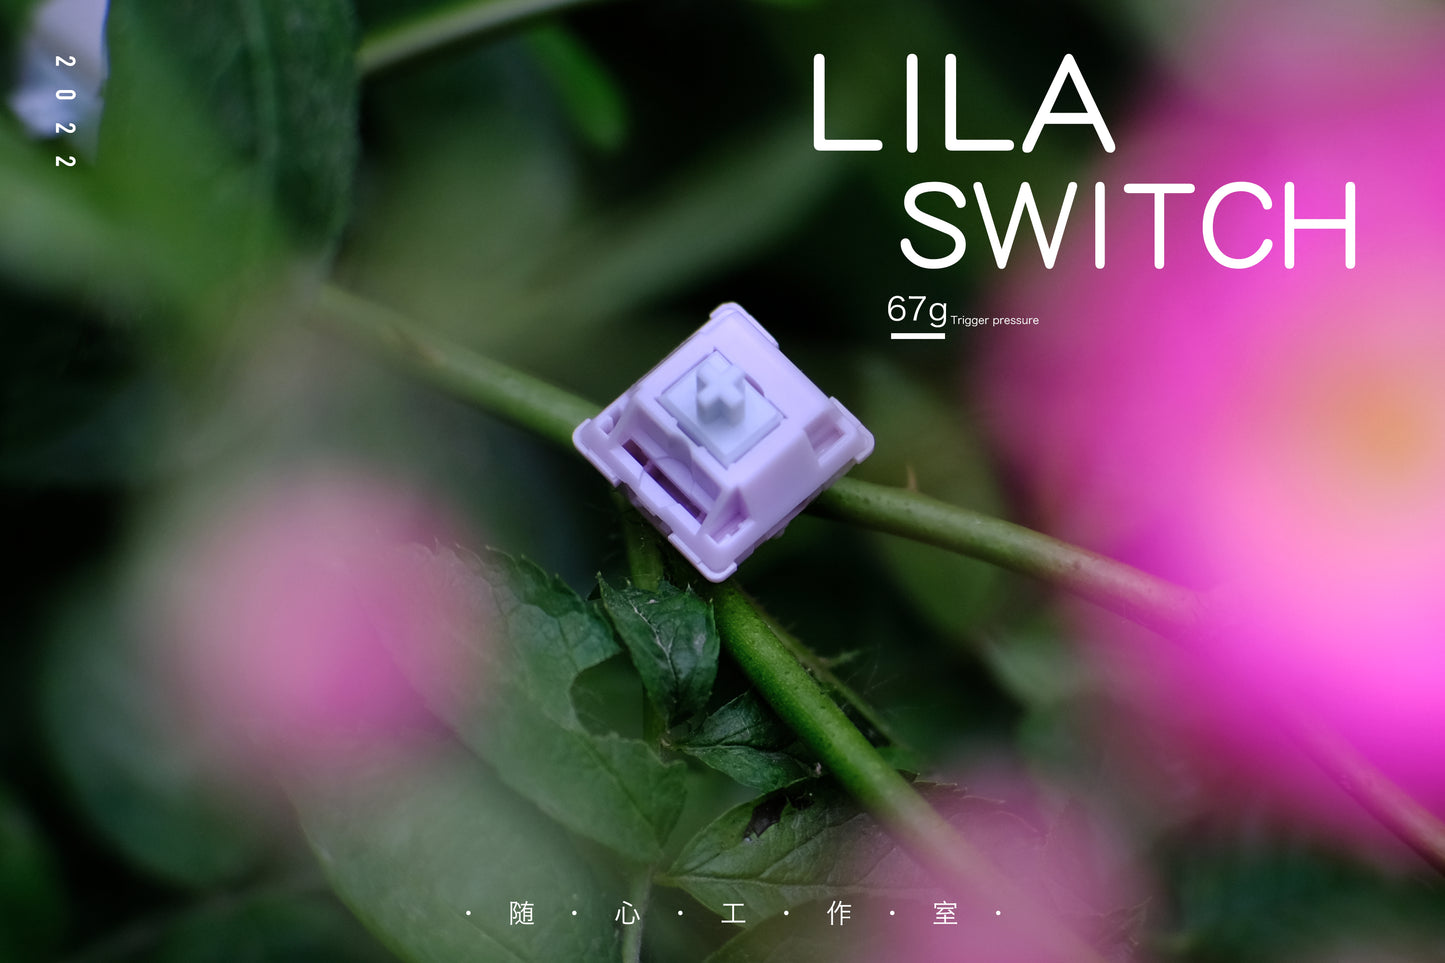 Lila Switch